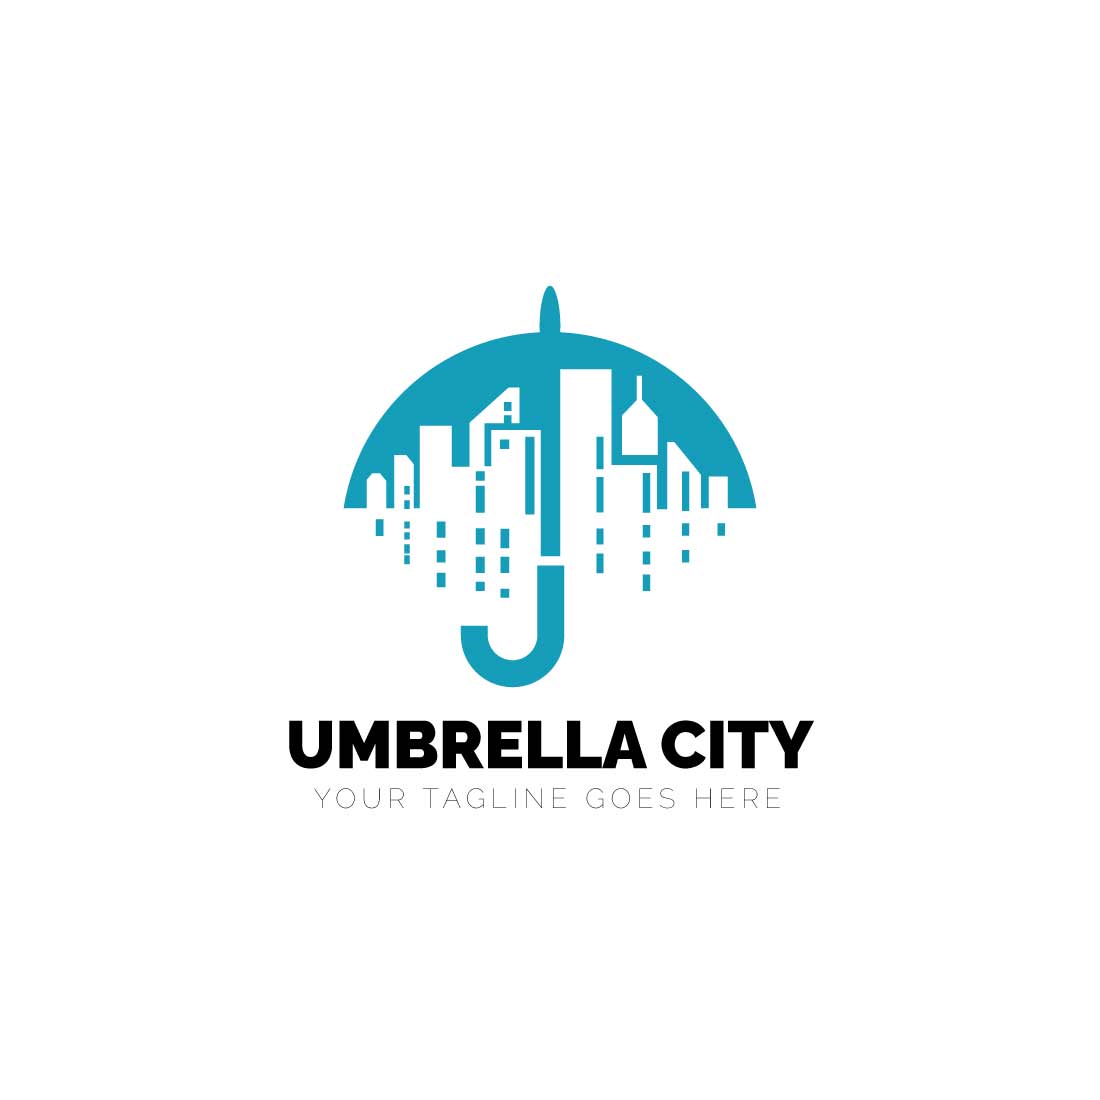 Initial City umbrella logo design preview image.